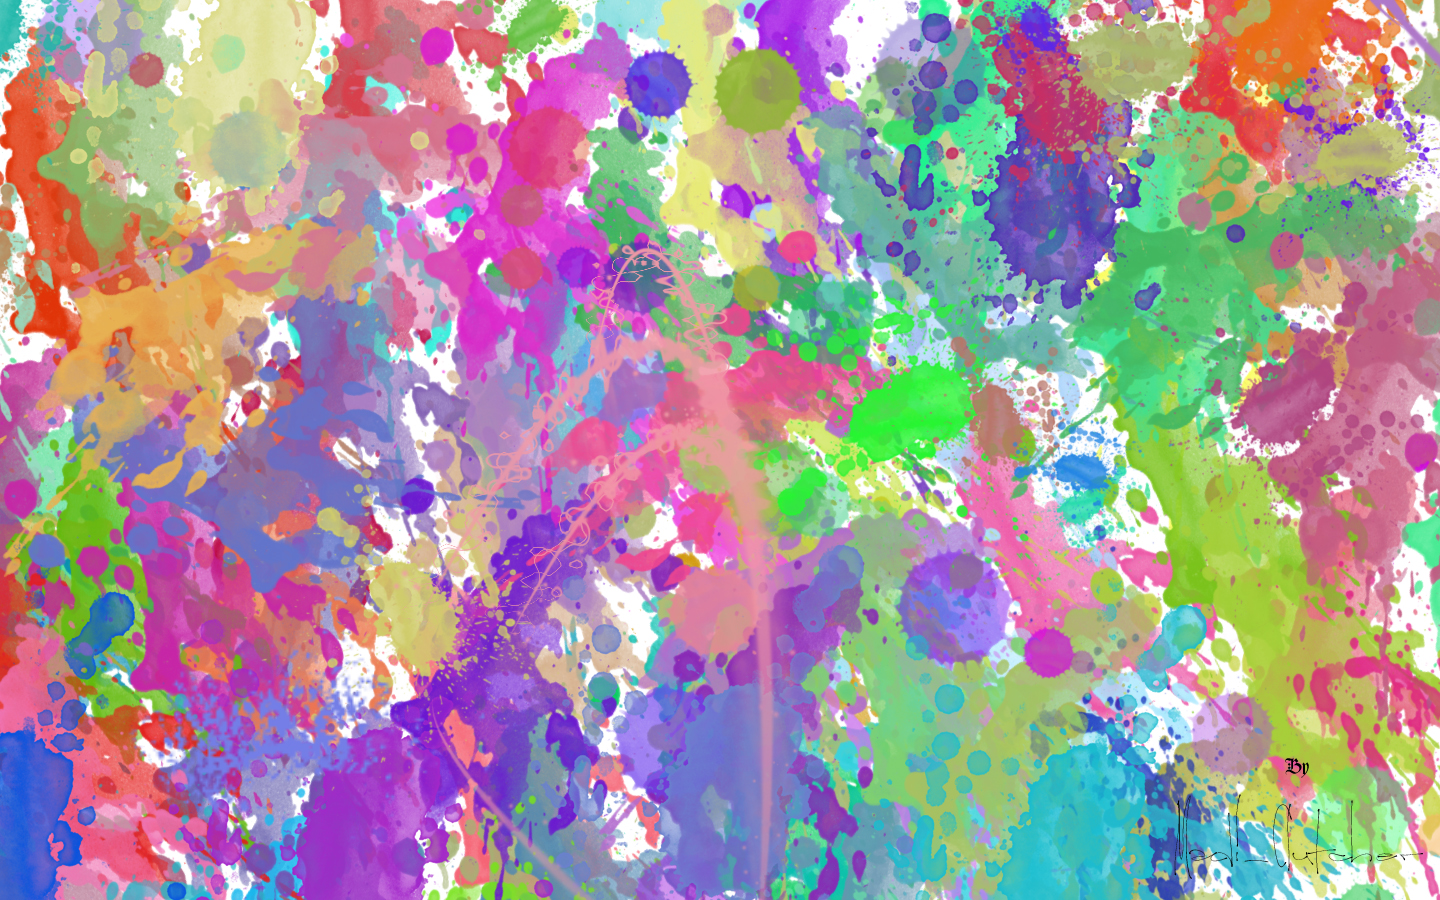 Paint Splatter Desktop Wallpaper Image Amp Pictures Becuo